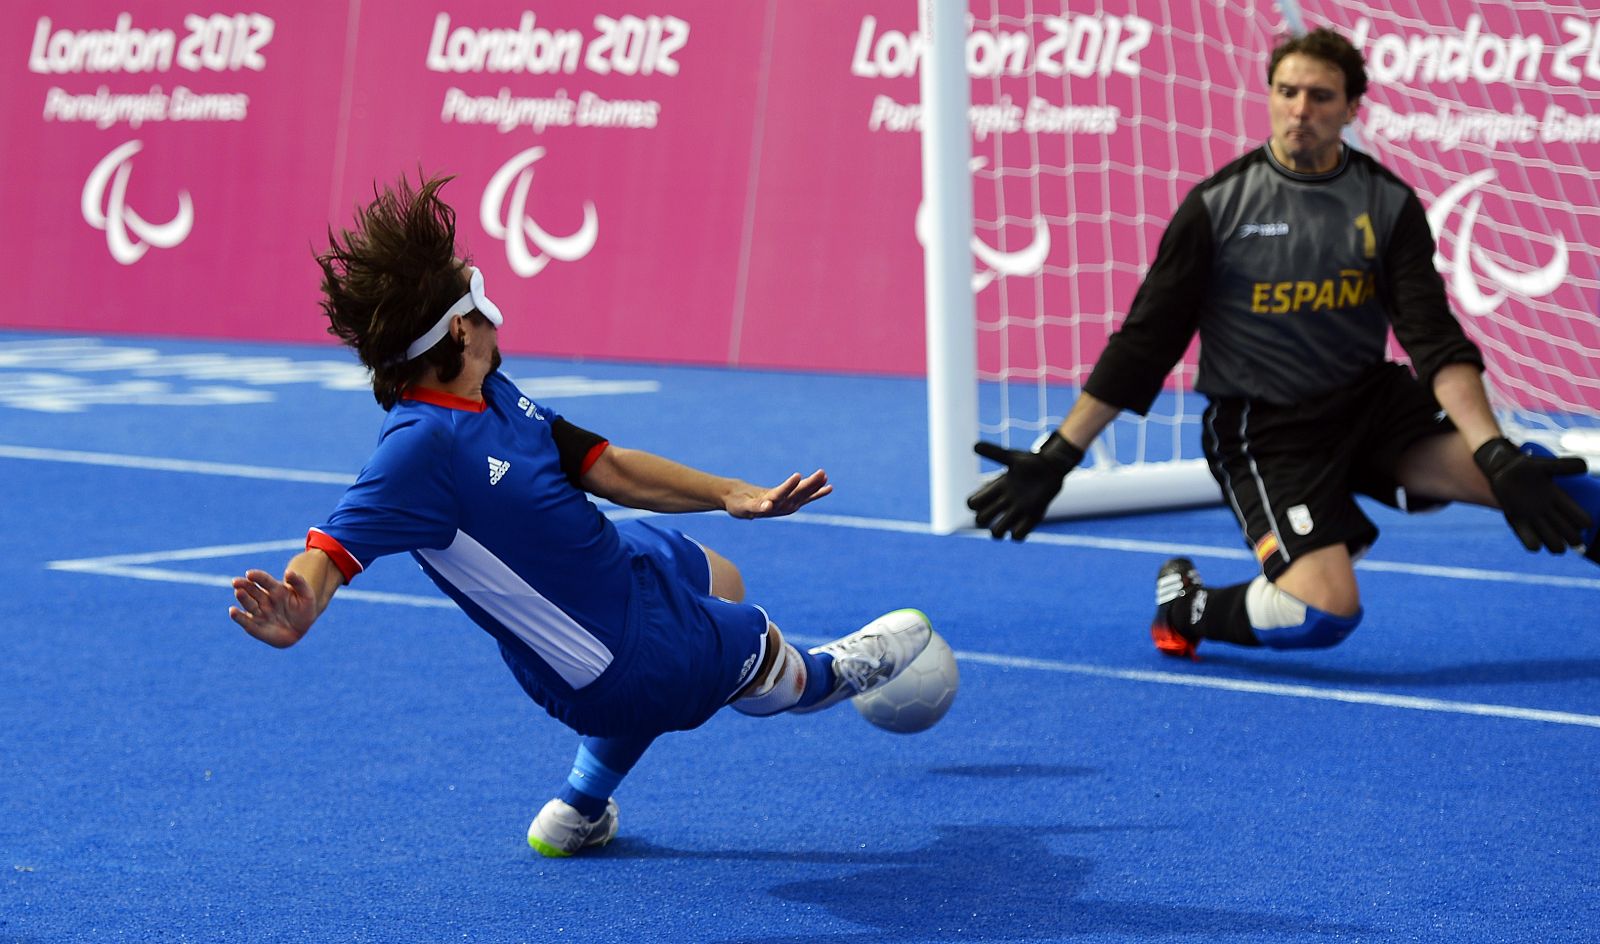 El francés Villeroux anota el segundo gol contra España en los Paralímpicos de Londres 2012